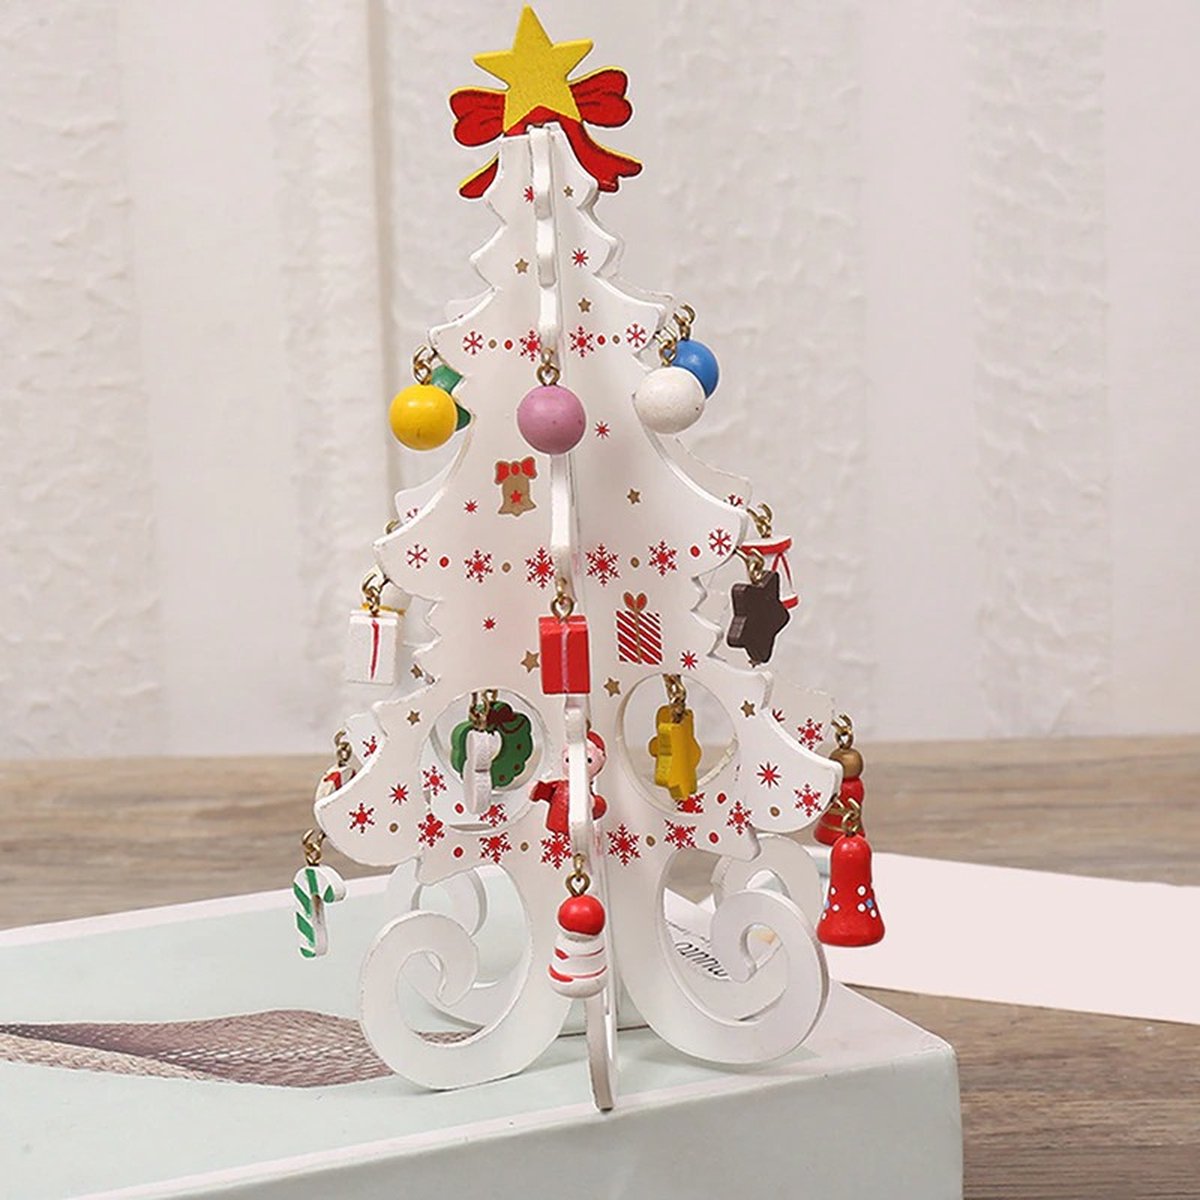 Houten Kerstboom Met Versiering | Wit | Kerst Decoratie | Kerst Versiering